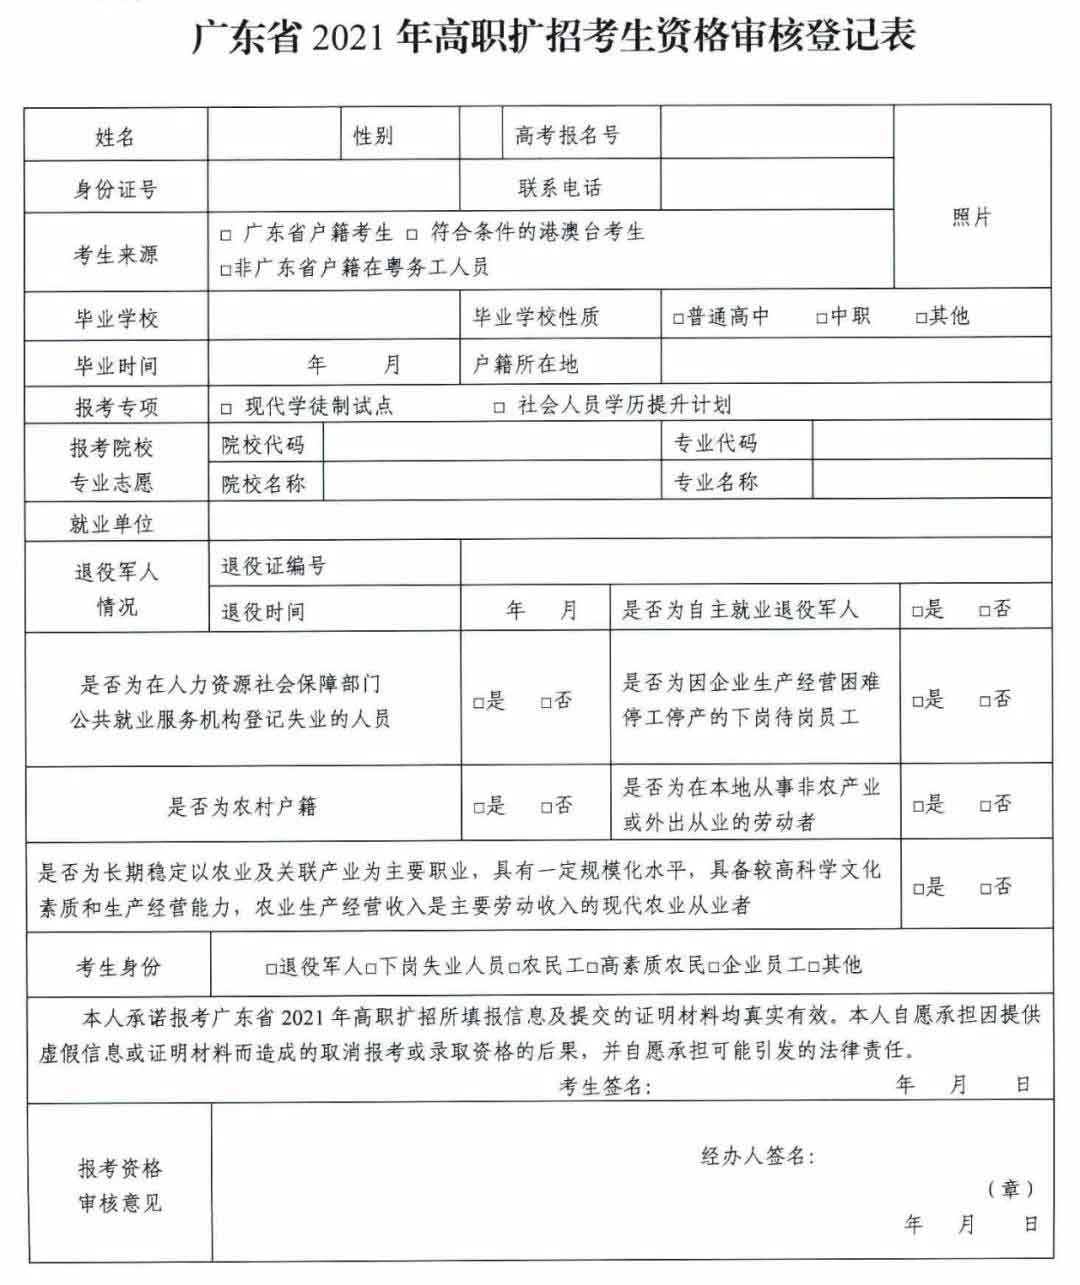 广东交通职业技术学院2021年高职扩招专项行动招生简章(图6)